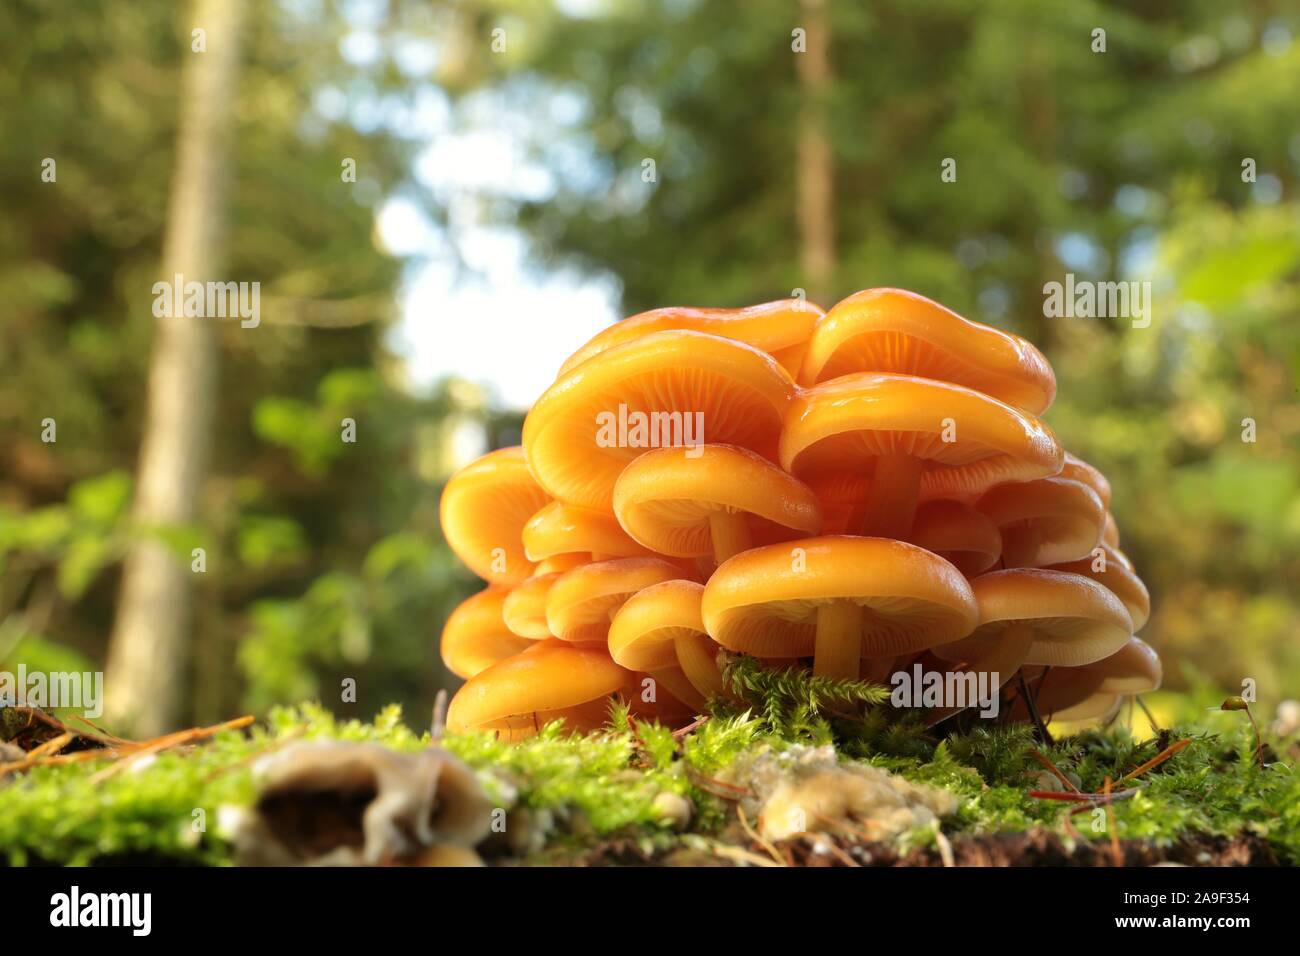 Familie der Pilze auf einem Baumstamm im Herbst Wald. Makro- und Nahaufnahmen von Pflanzen im Wald. Stockfoto